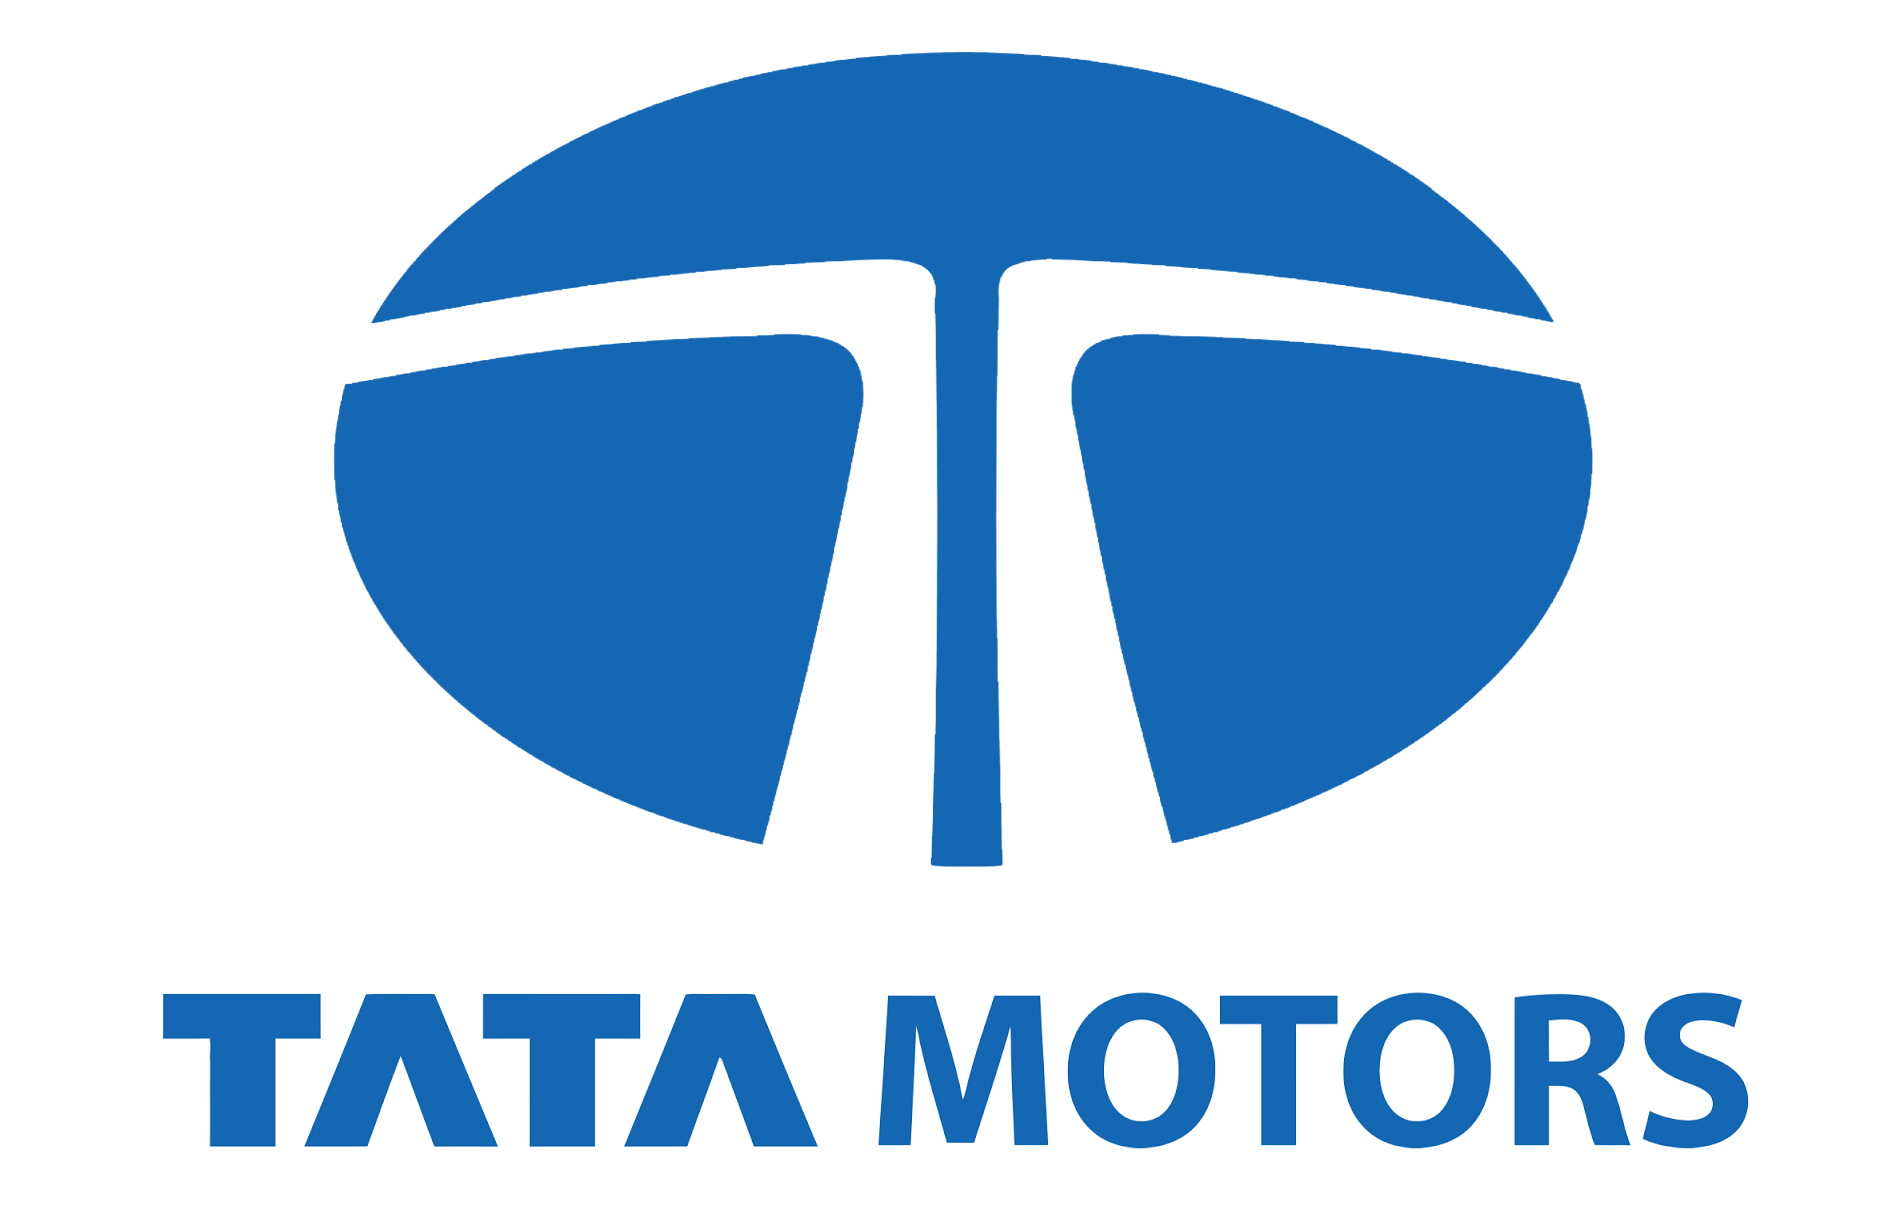 Heritage Motors (Tata Motors) Logo